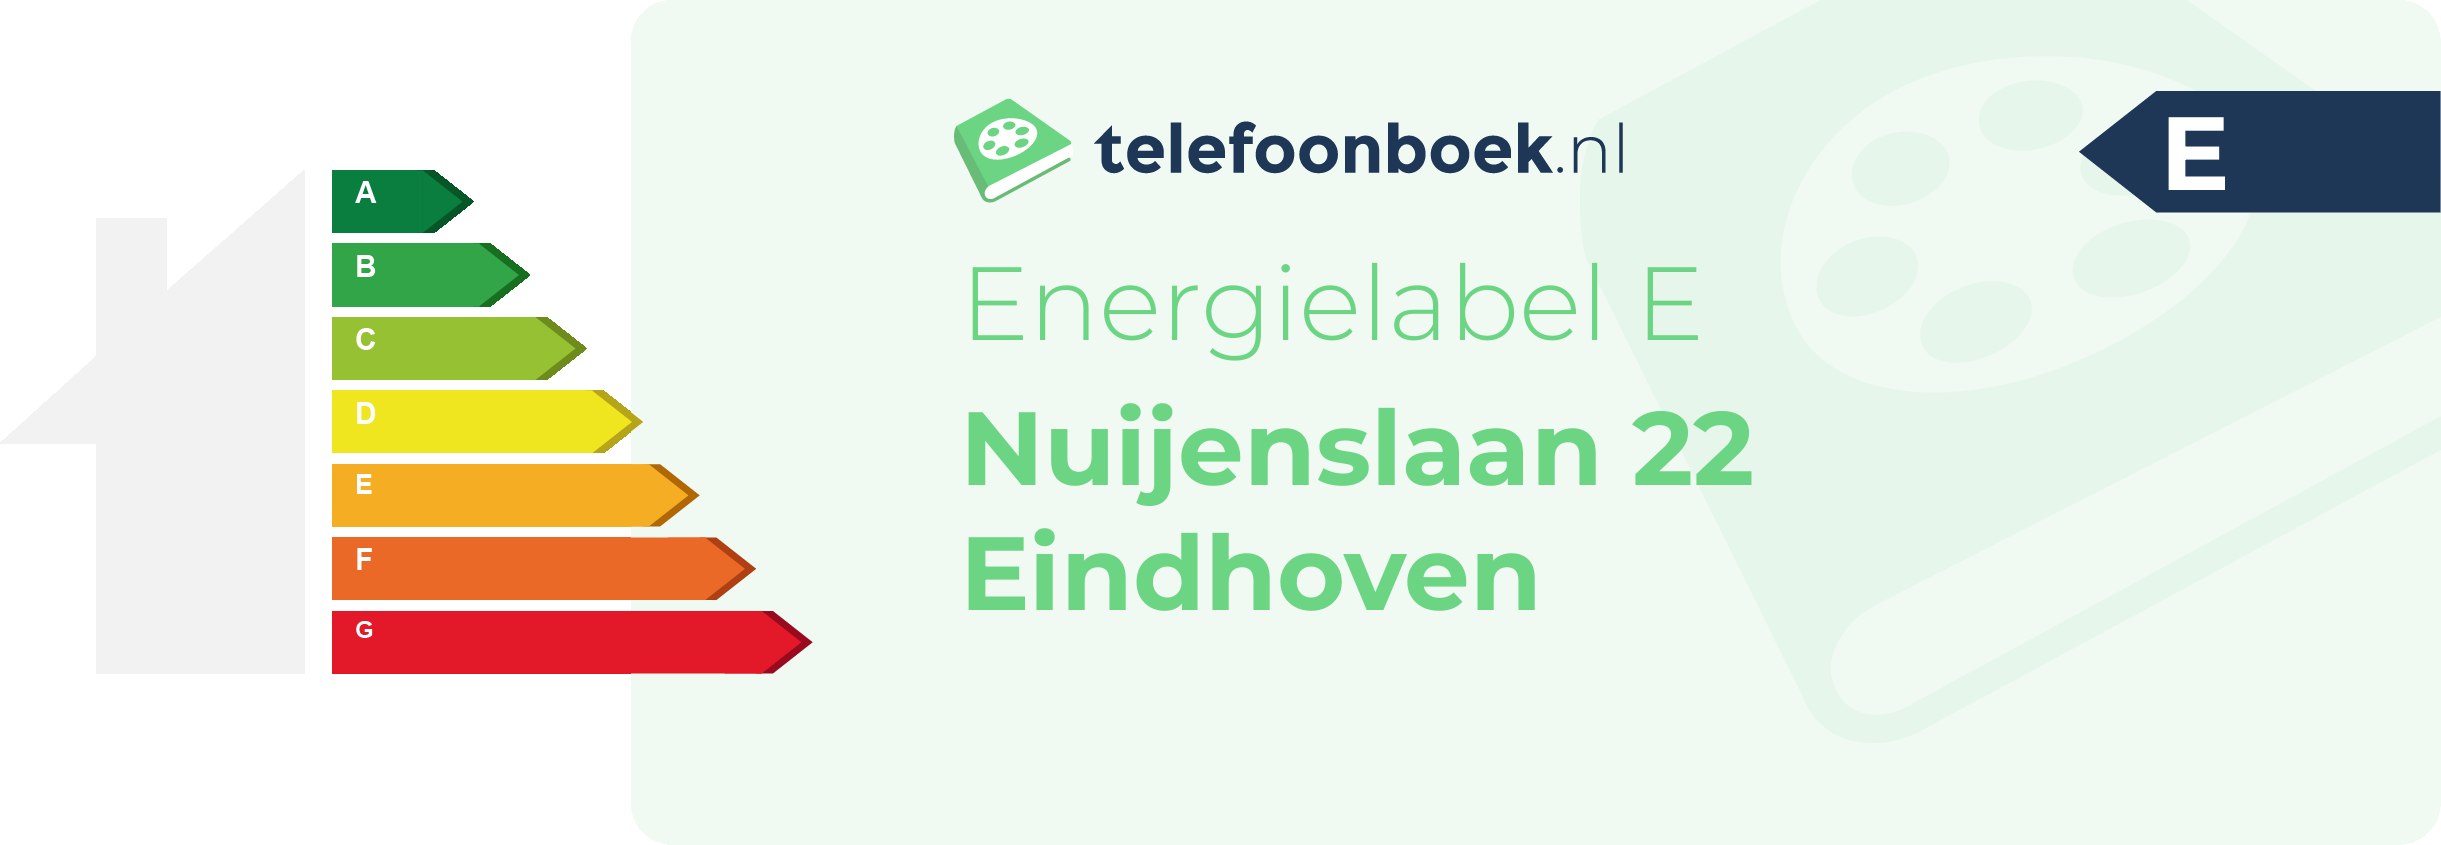 Energielabel Nuijenslaan 22 Eindhoven